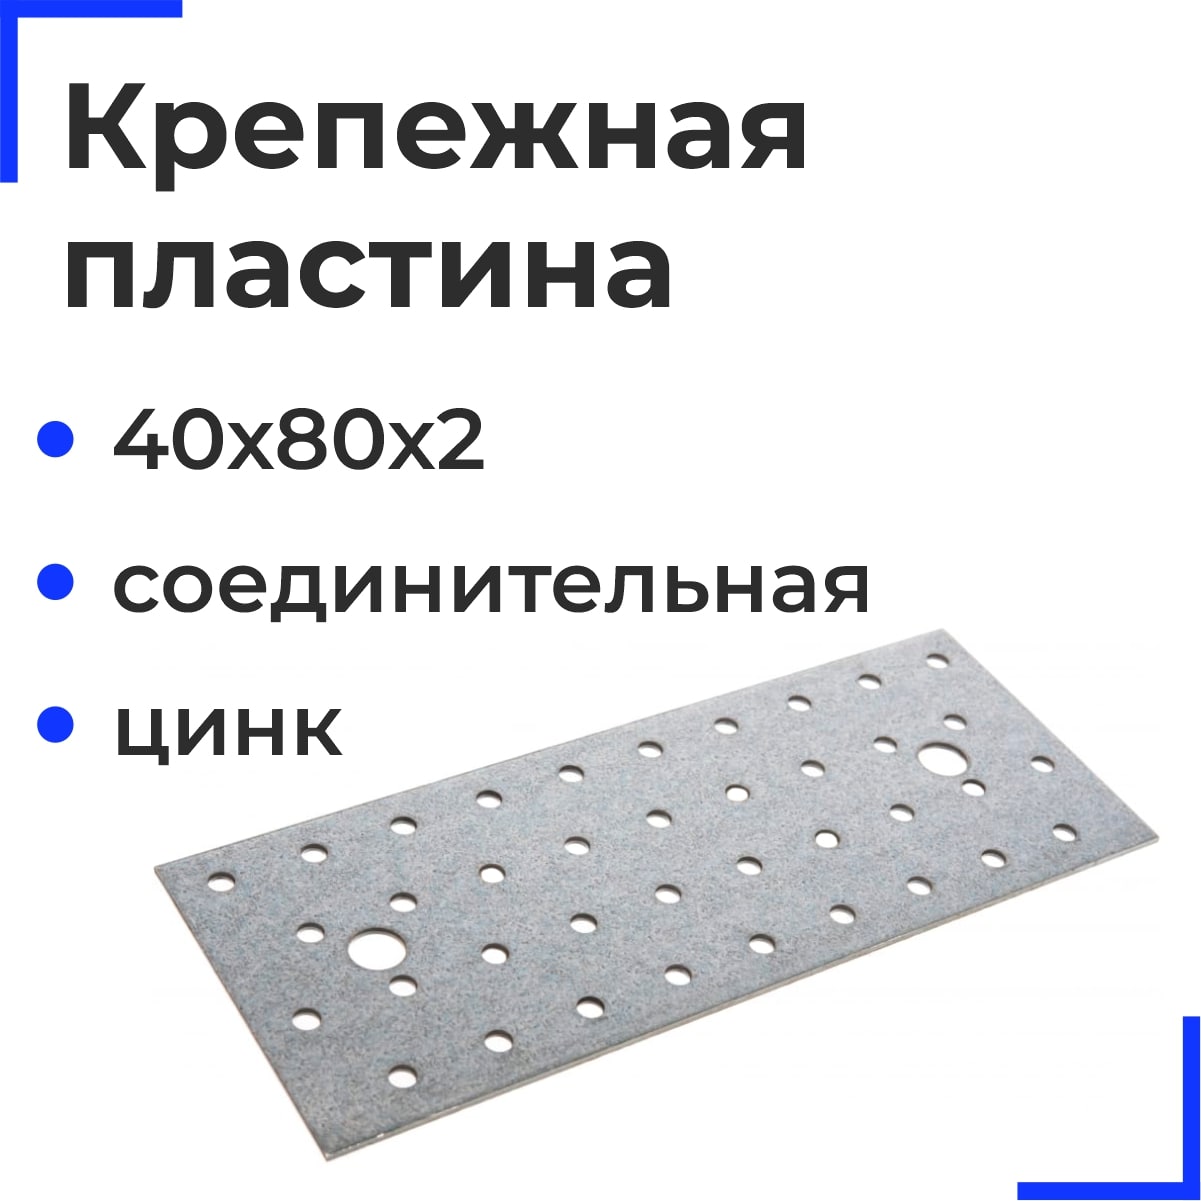 Крепежная пластина соединительная ОЦ 40х80х2 (100 шт)